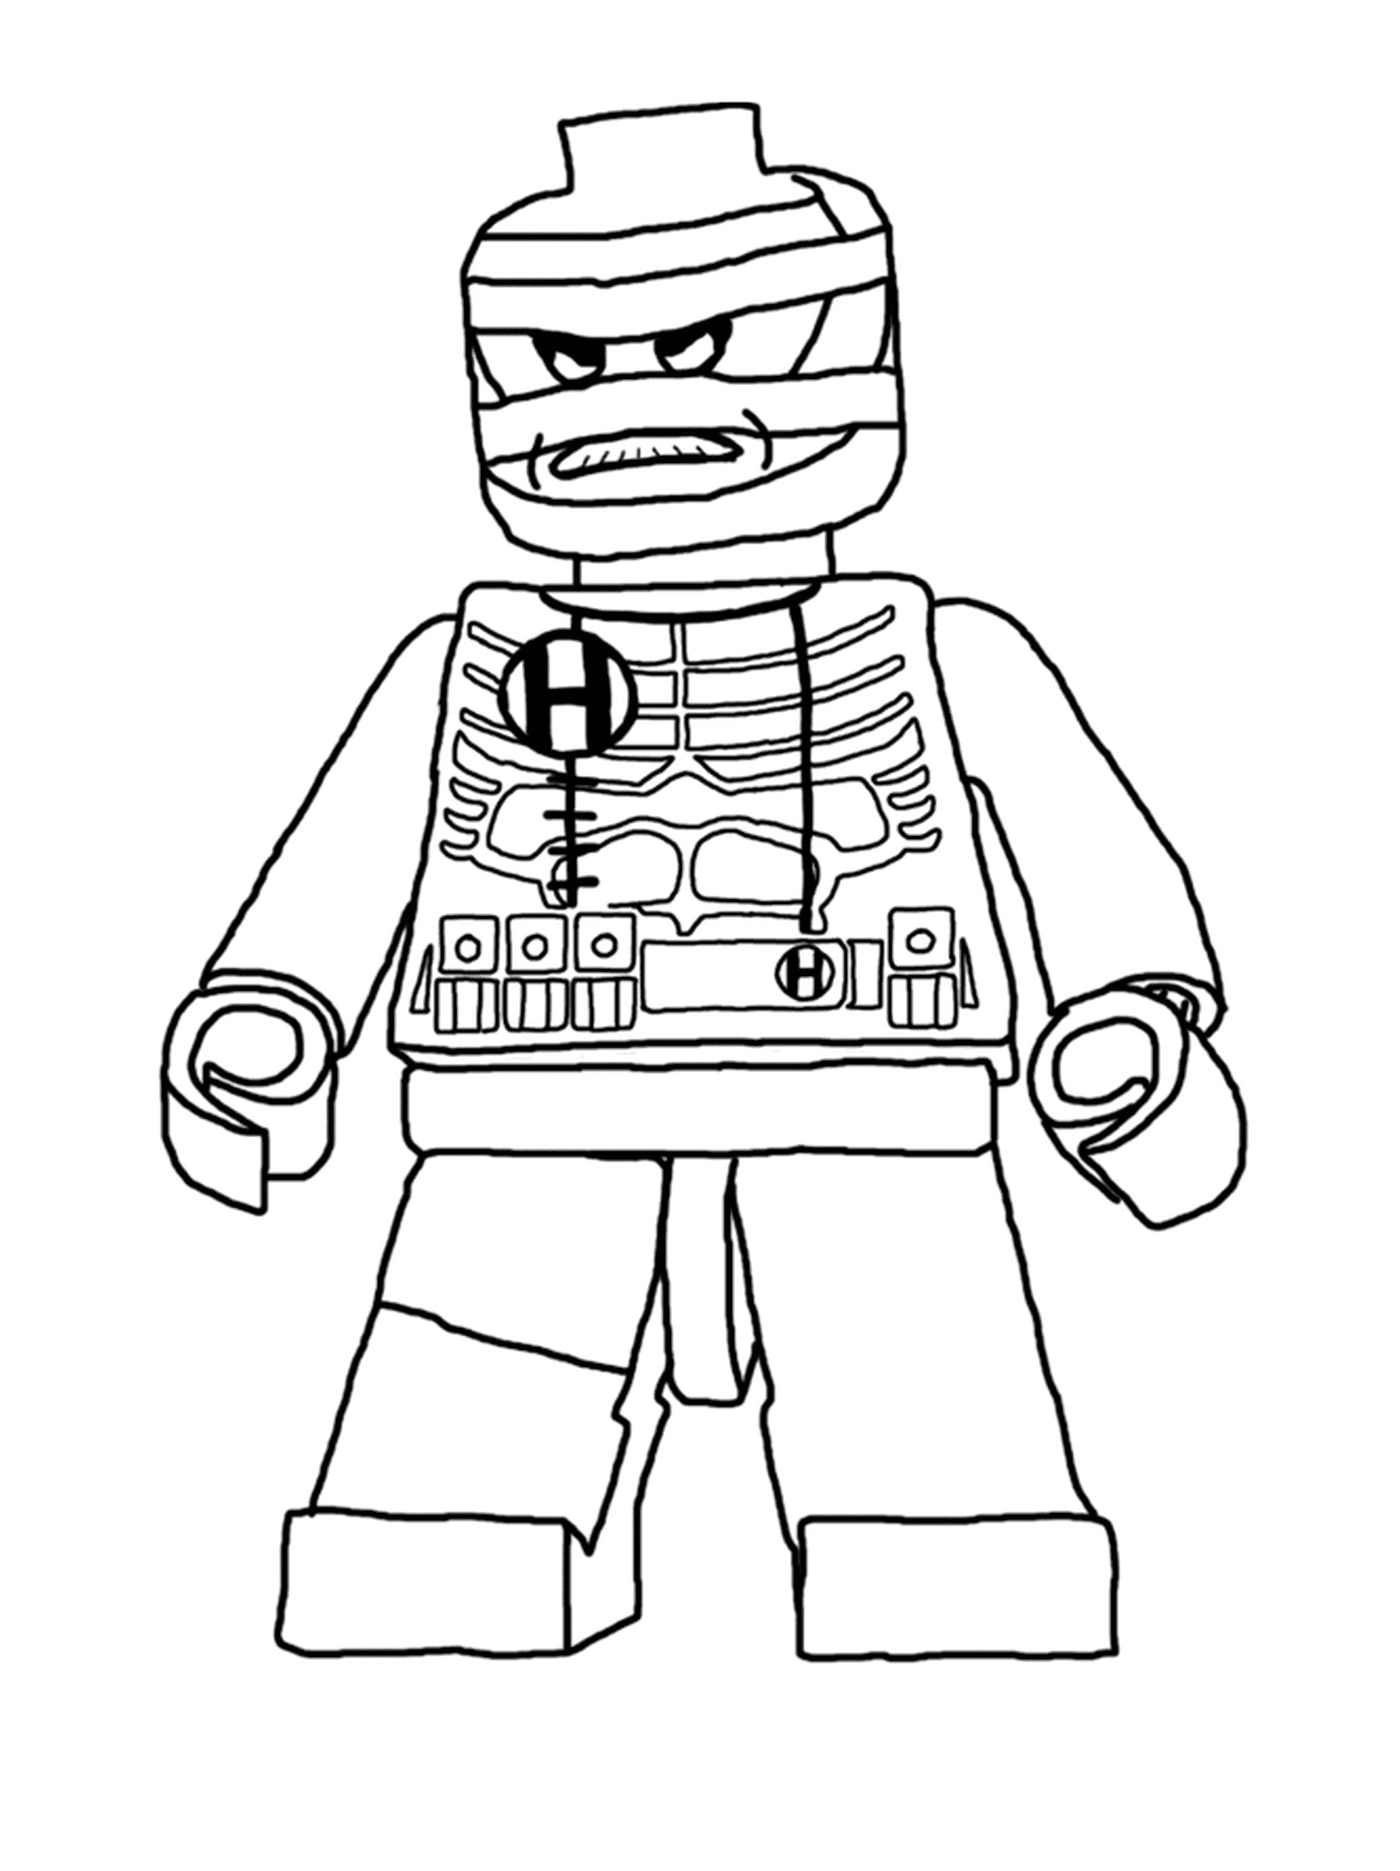  लेगो पुरुष एक टाइटन पोशाक पहने हुए 